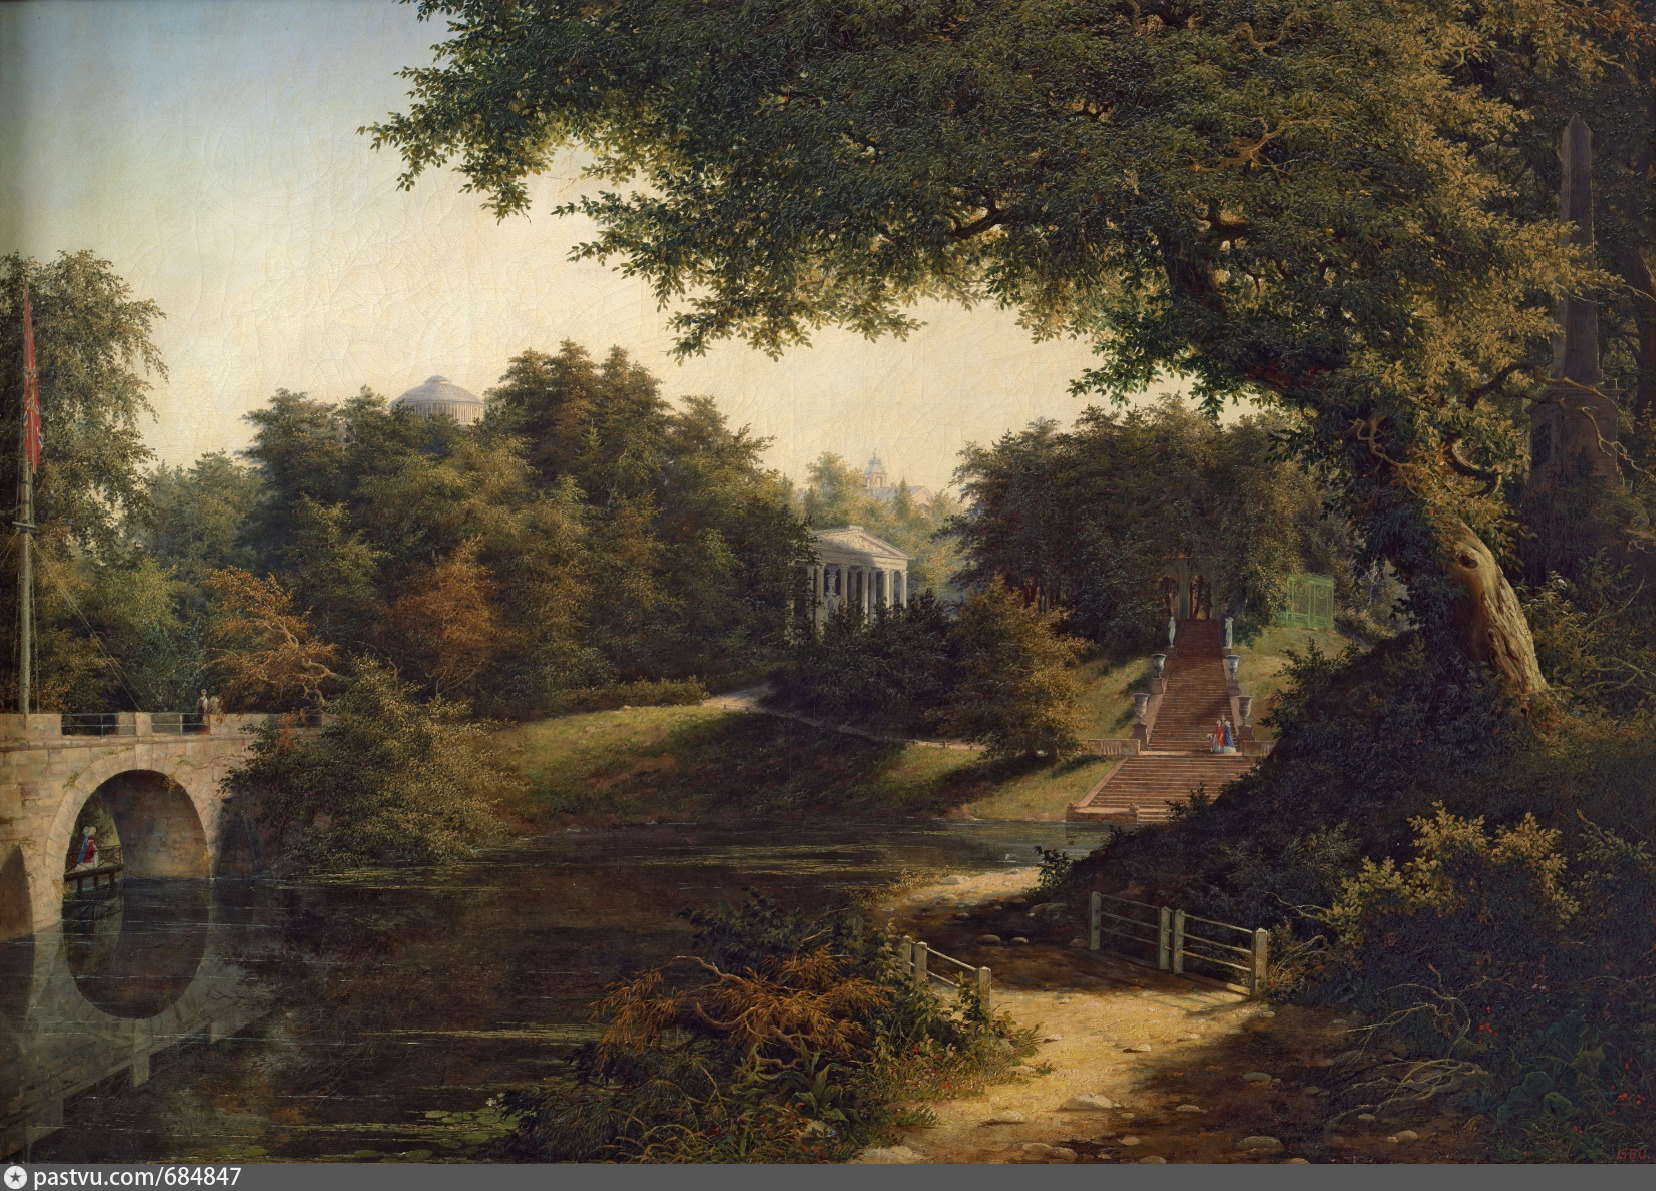 Сад 18 века. Волосков а.я. вид в Павловском парке 1845.